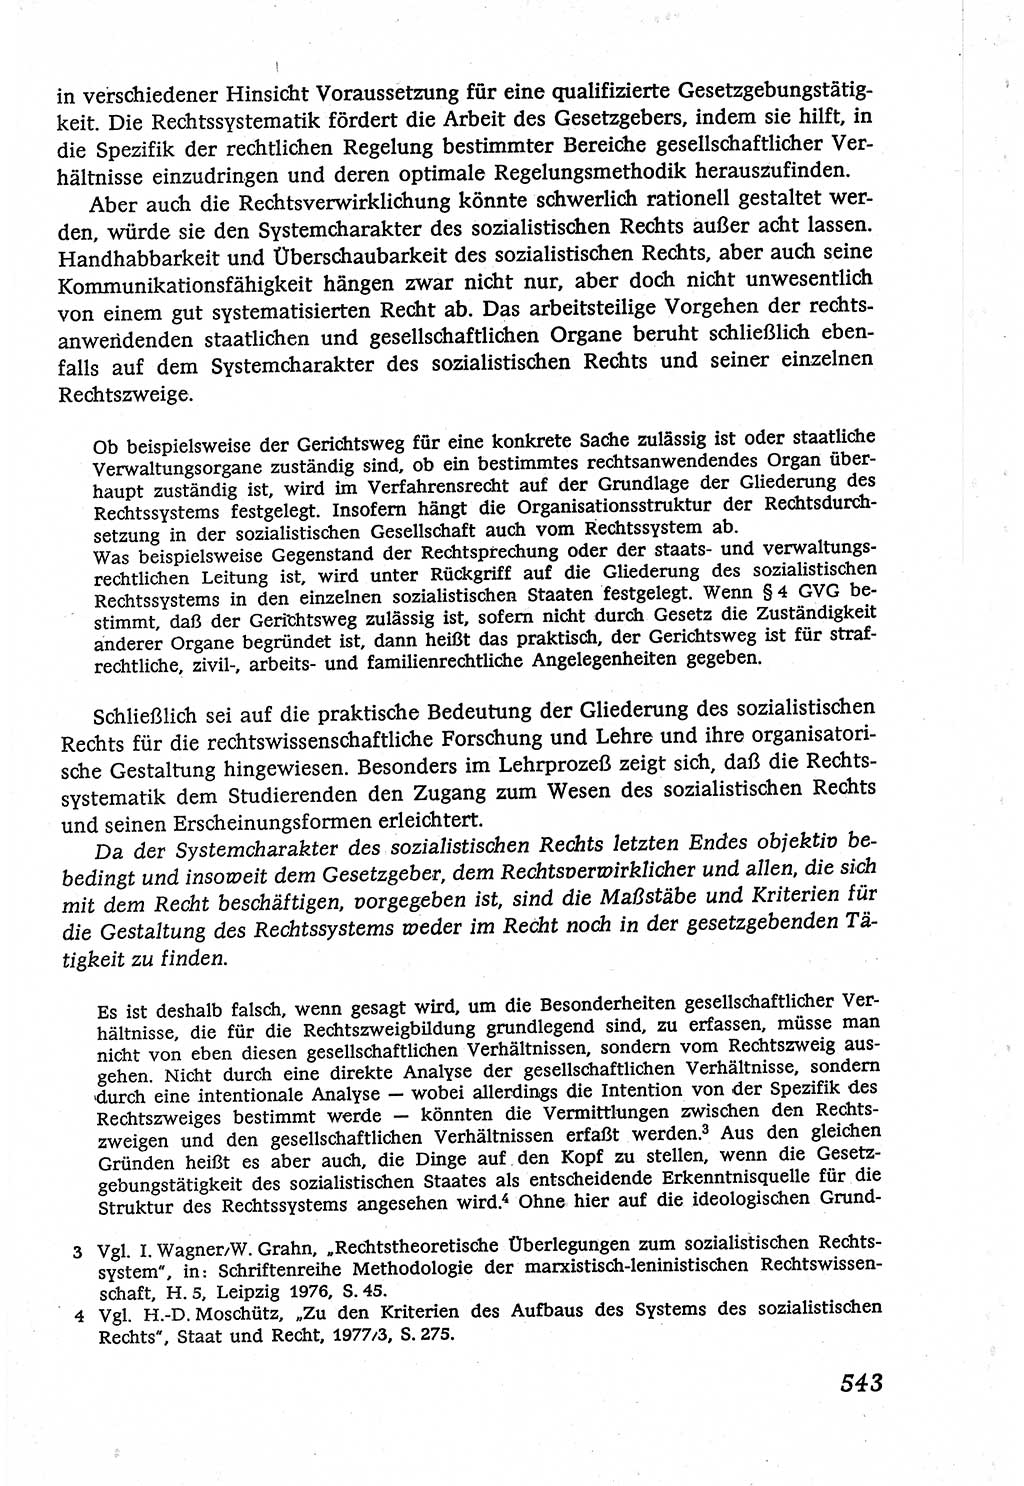 Marxistisch-leninistische (ML) Staats- und Rechtstheorie [Deutsche Demokratische Republik (DDR)], Lehrbuch 1980, Seite 543 (ML St.-R.-Th. DDR Lb. 1980, S. 543)